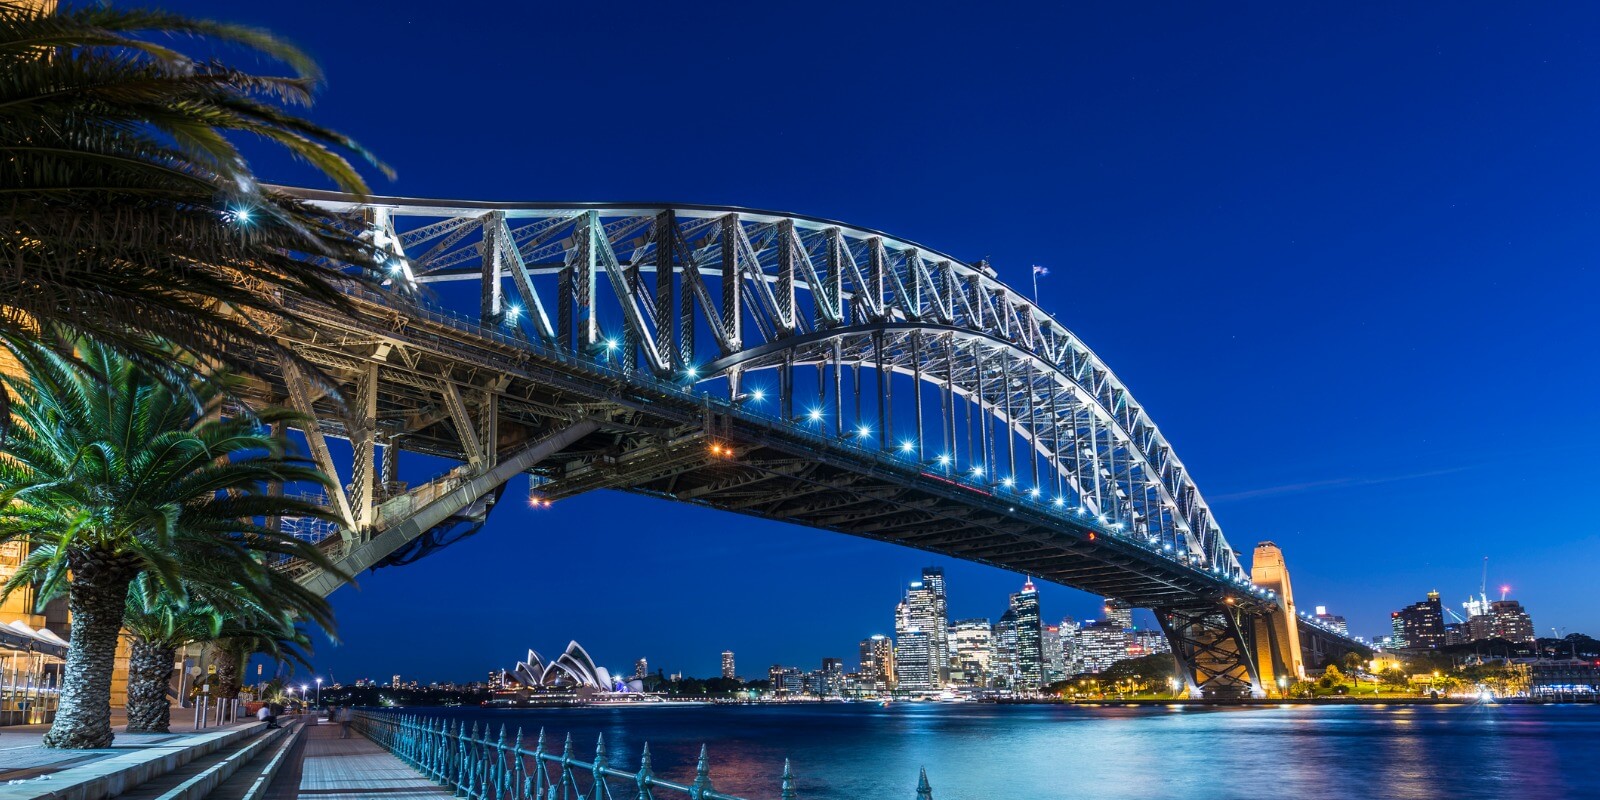 Sydney, AU skyline at night, view from under Harbour Bridge